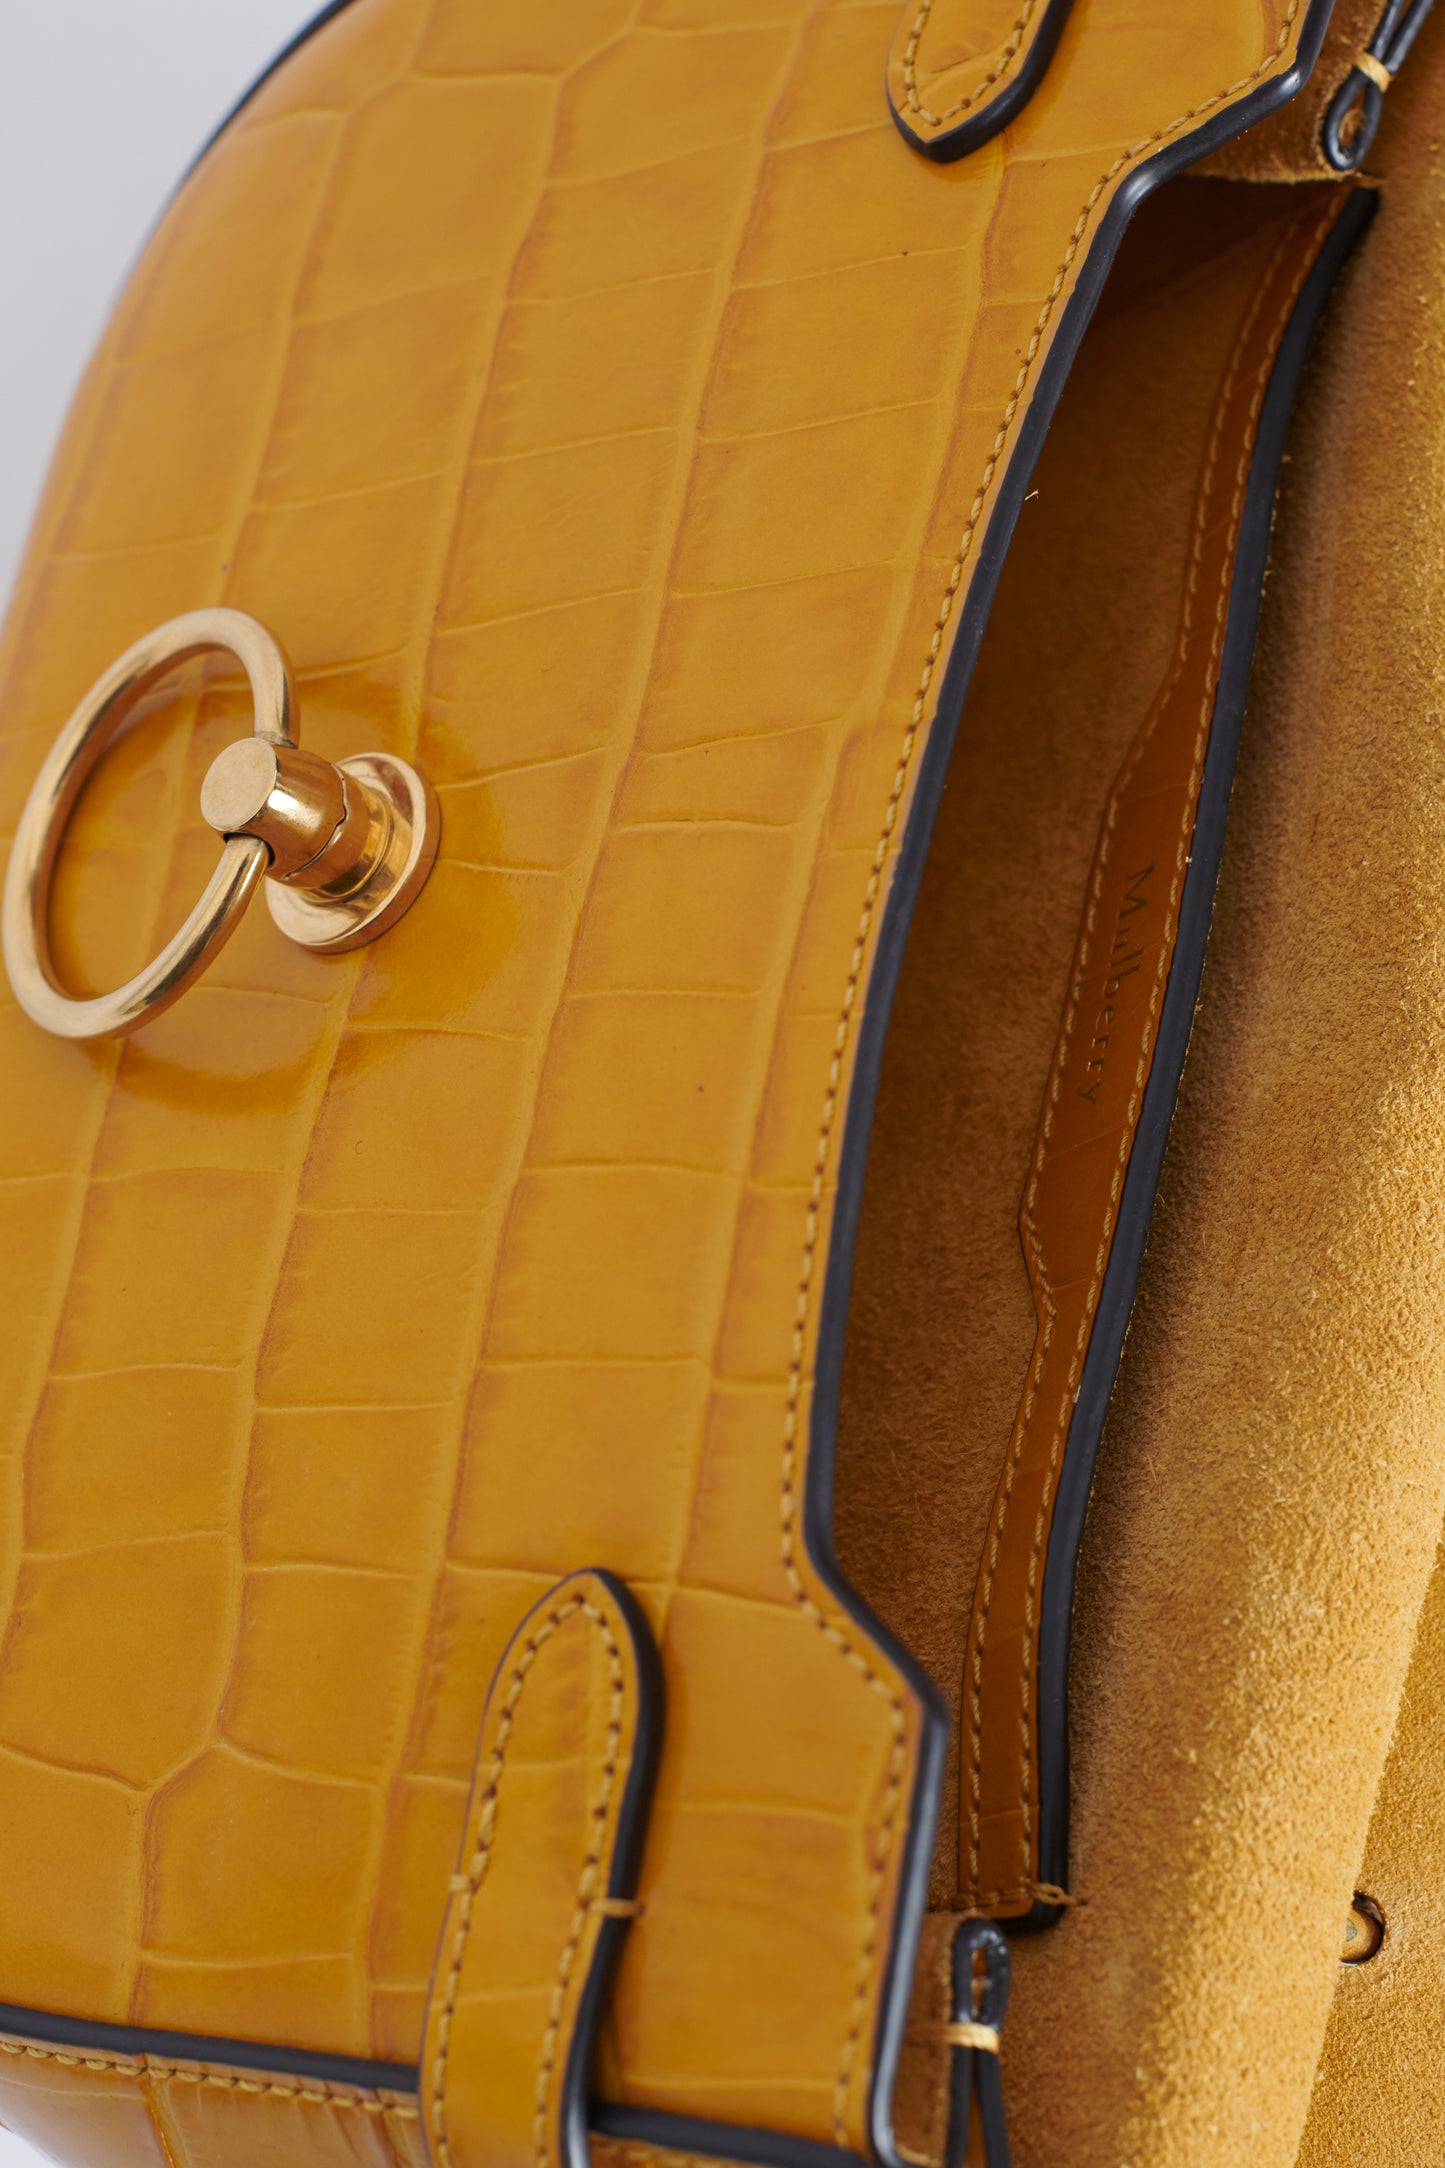 Preloved Mustard Croc-Effect Leather Satchel Bag